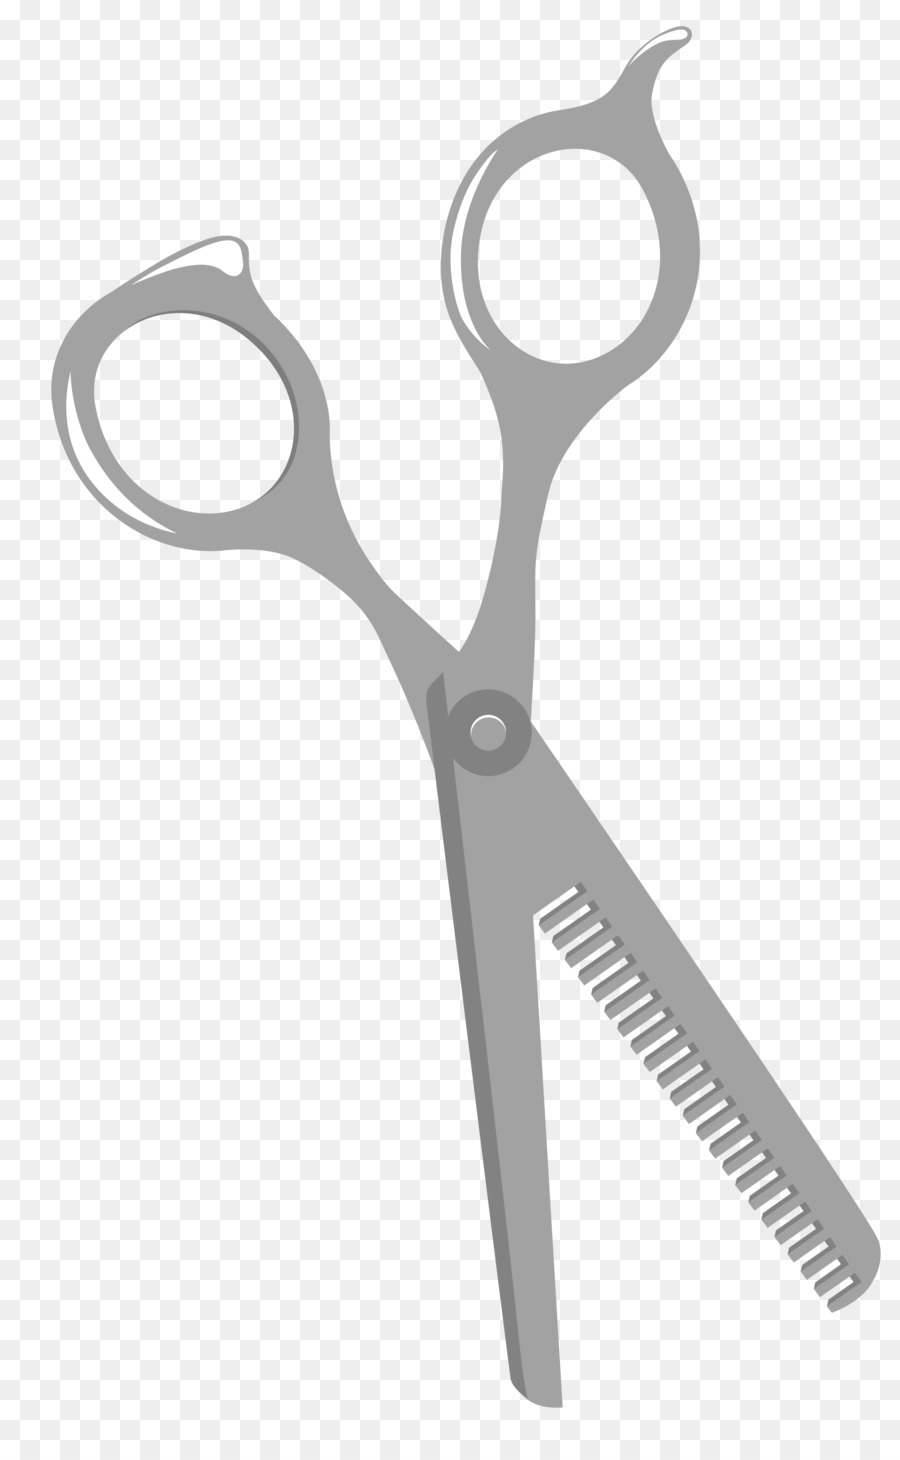 Scissors Euclidean vector - Vector scissors png download - 2088*3352 - Free Transparent Scissors png Download.